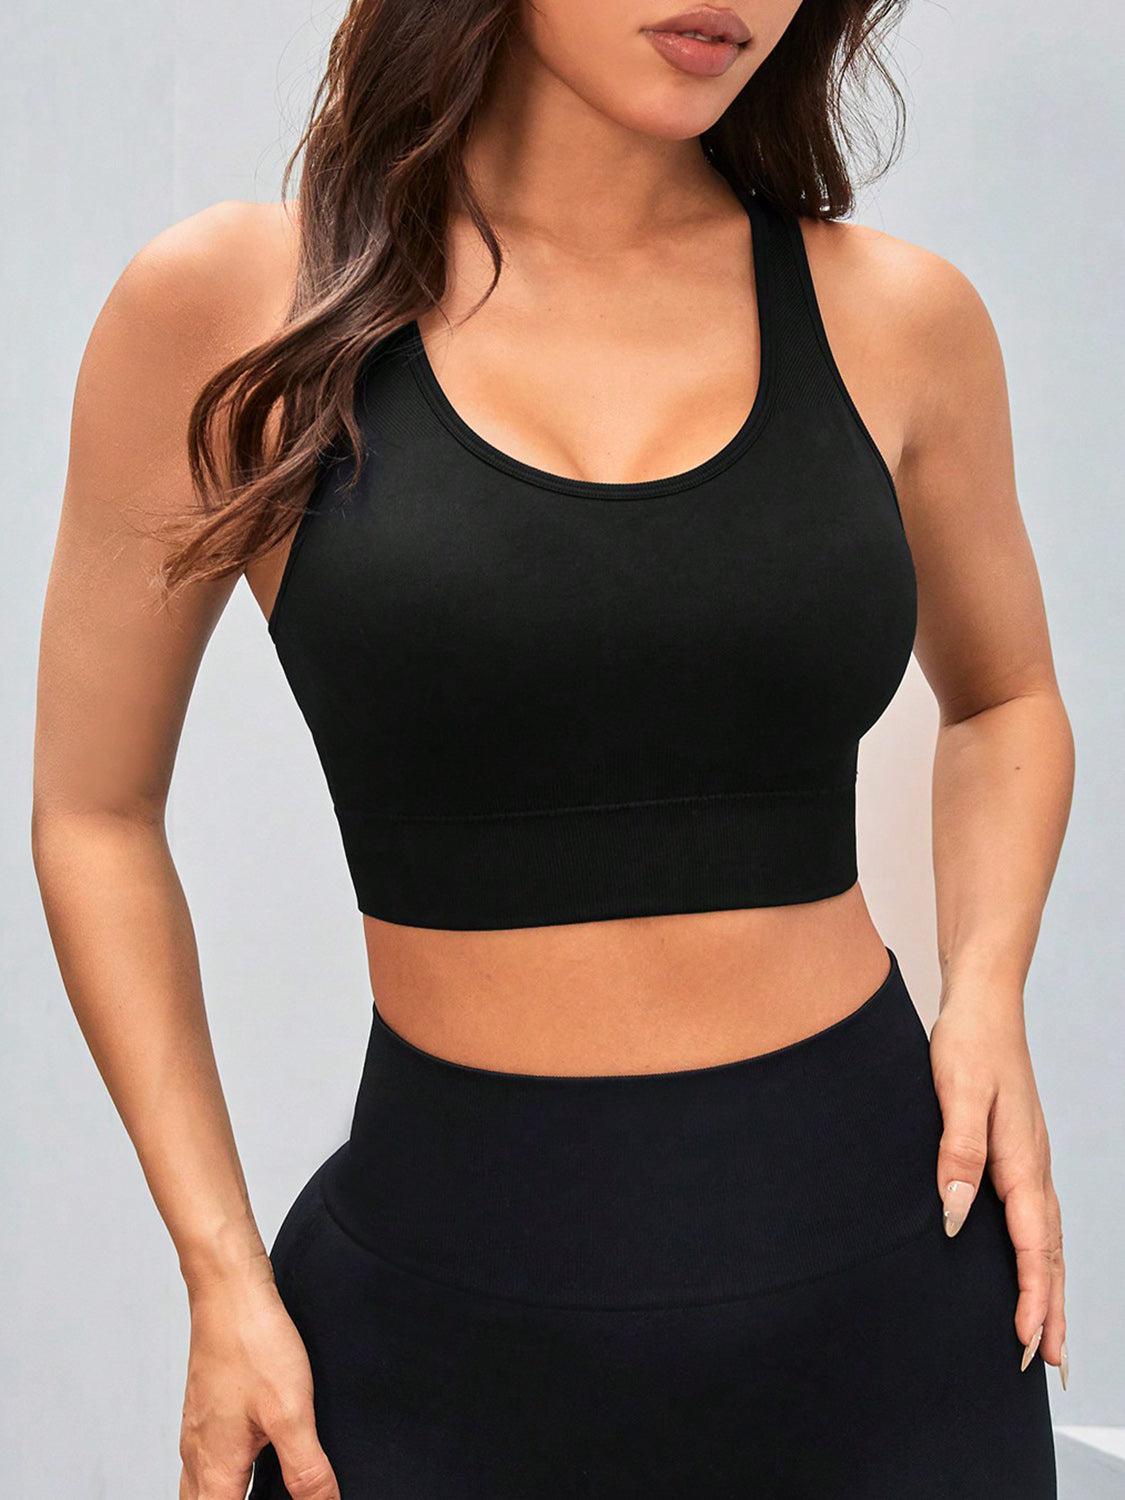 a woman wearing a black sports bra top